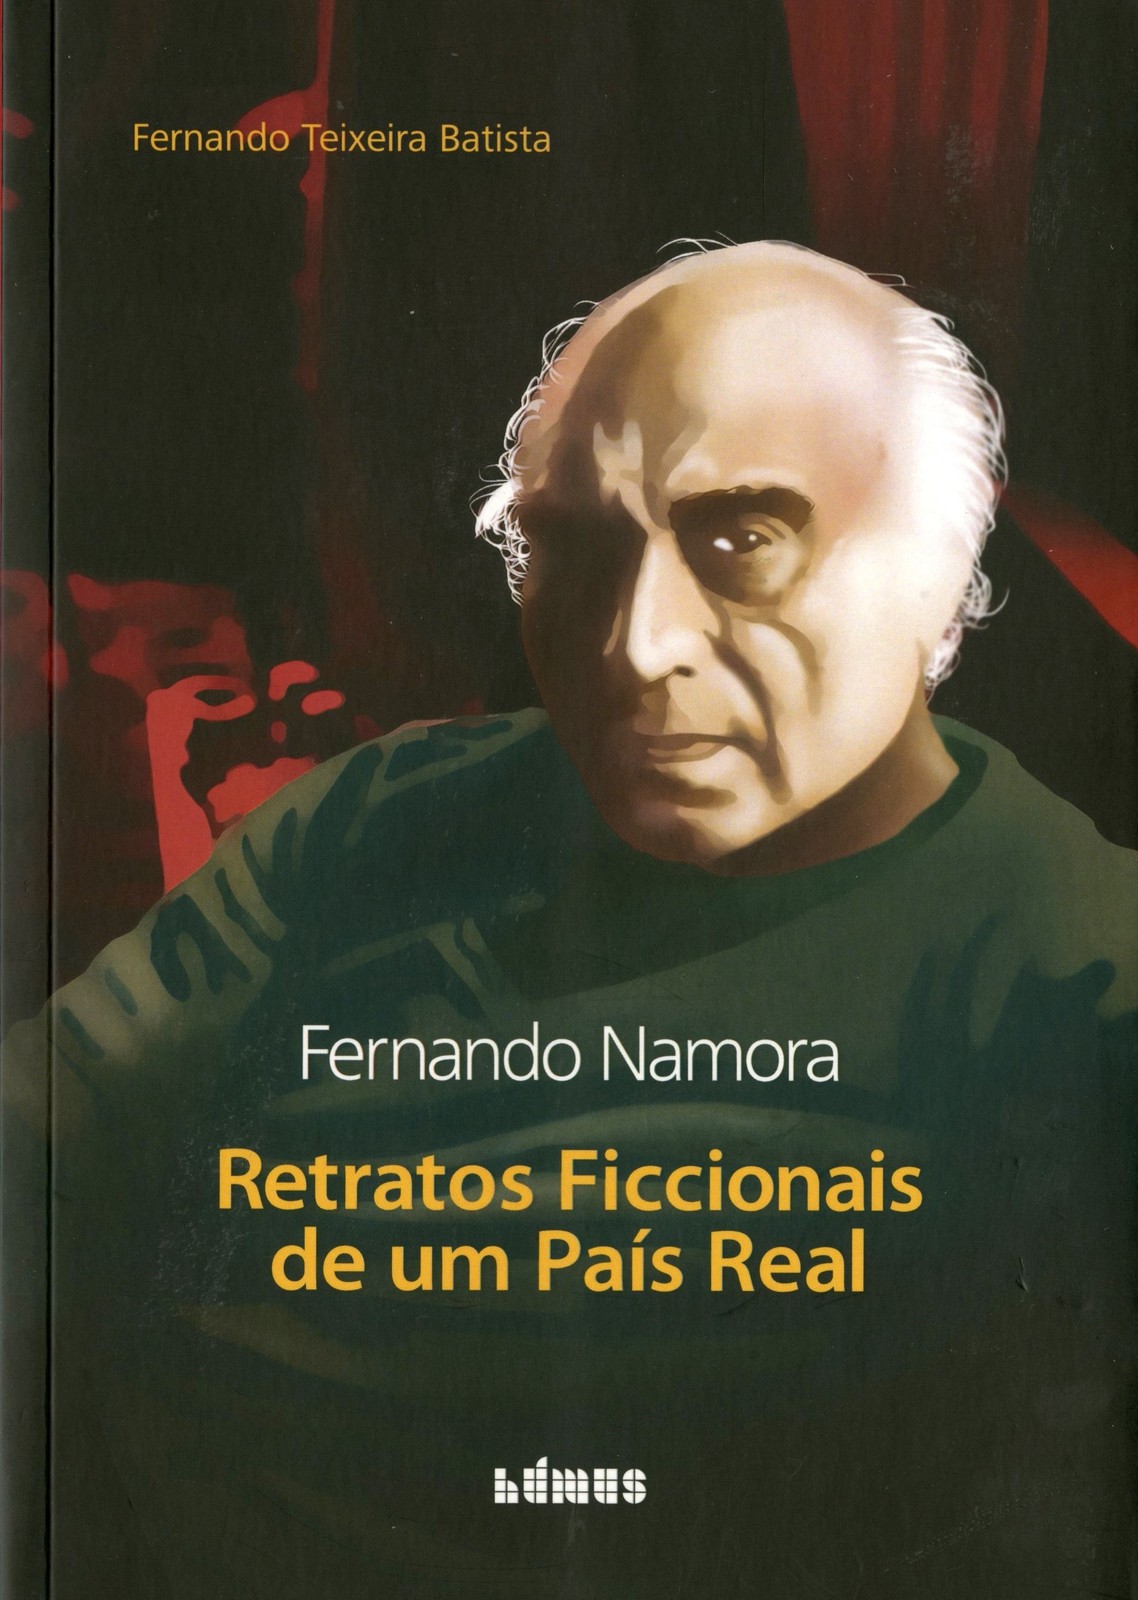 Fernando Teixeira Batista - Fernando Namora, Retratos Ficcionais de um país Real